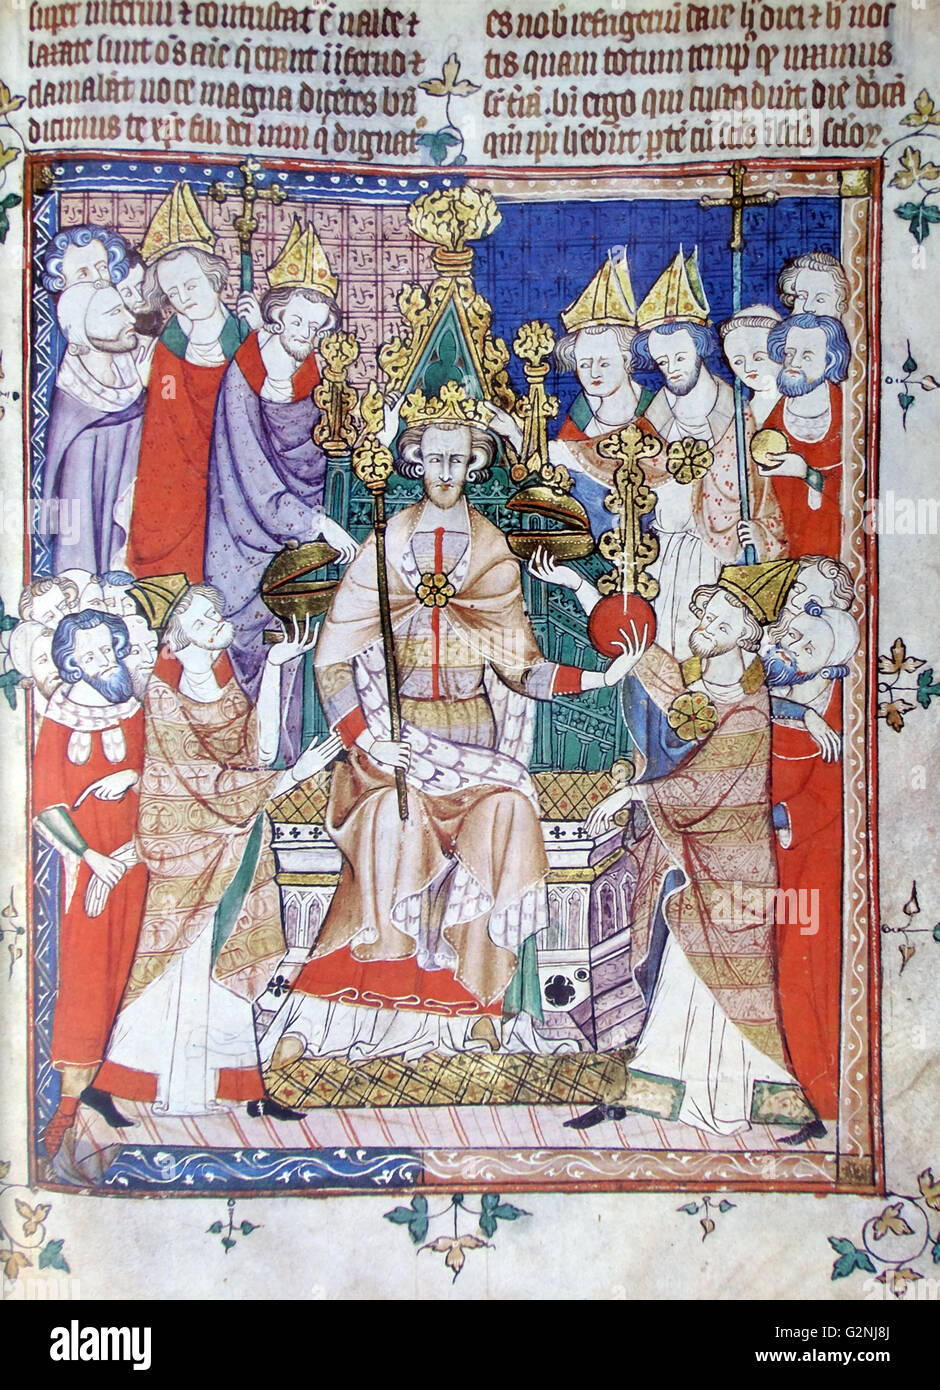 Manuskriptillumination Darstellung der Angst Ritus der Krönung von einem englischen Coronation Ordo. Der König wird geglaubt, King Edward werden II. Vom 13. Jahrhundert Stockfoto